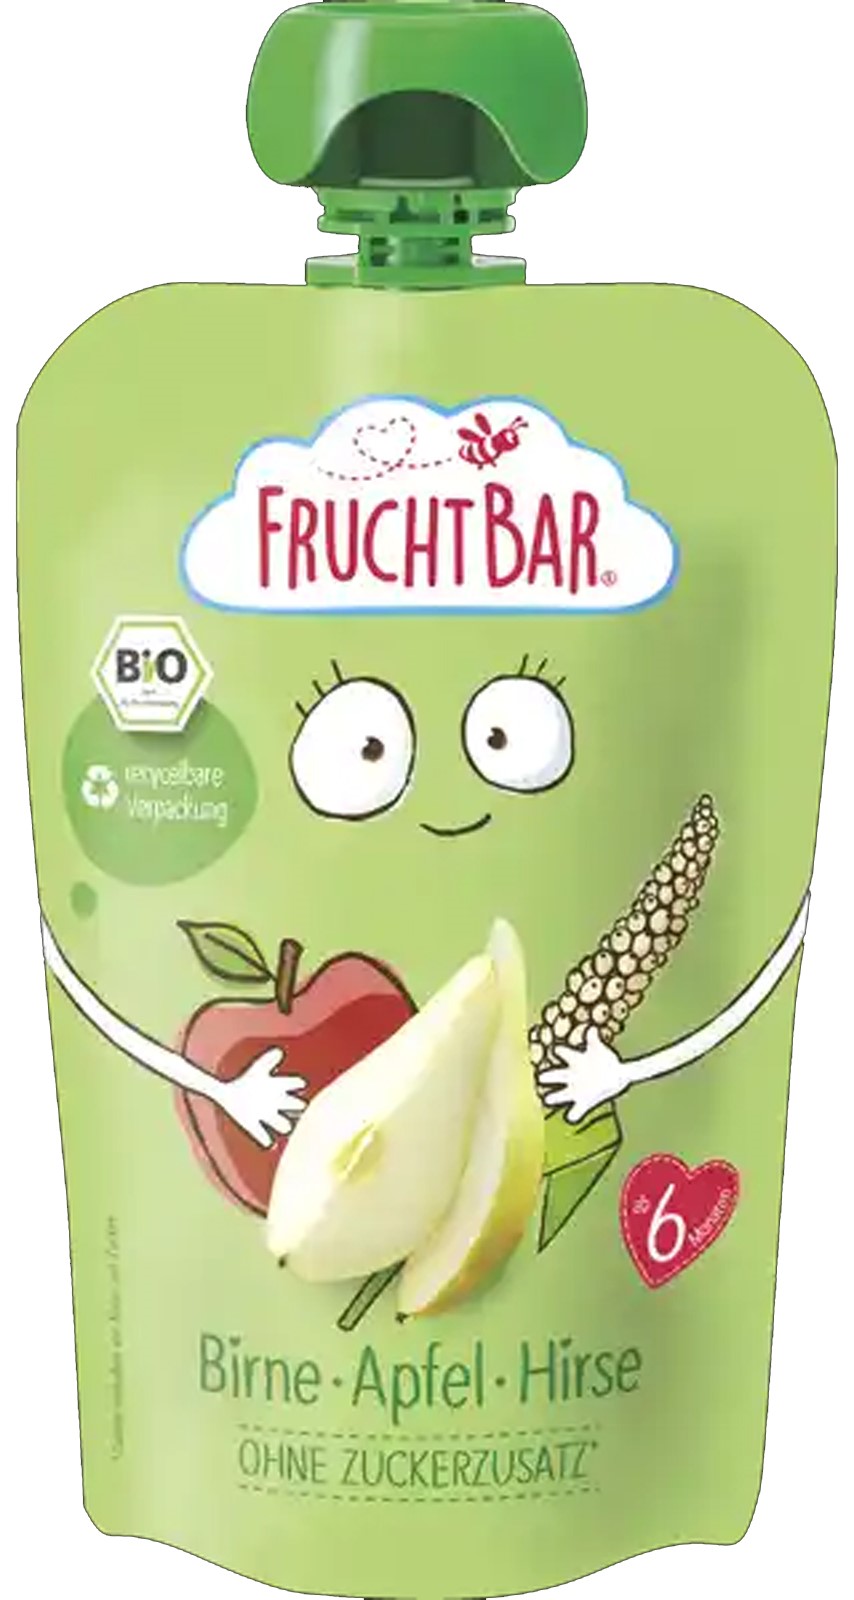 Fruchtbar Puré de frutas ecológico con cereales, pera, manzana y mijo